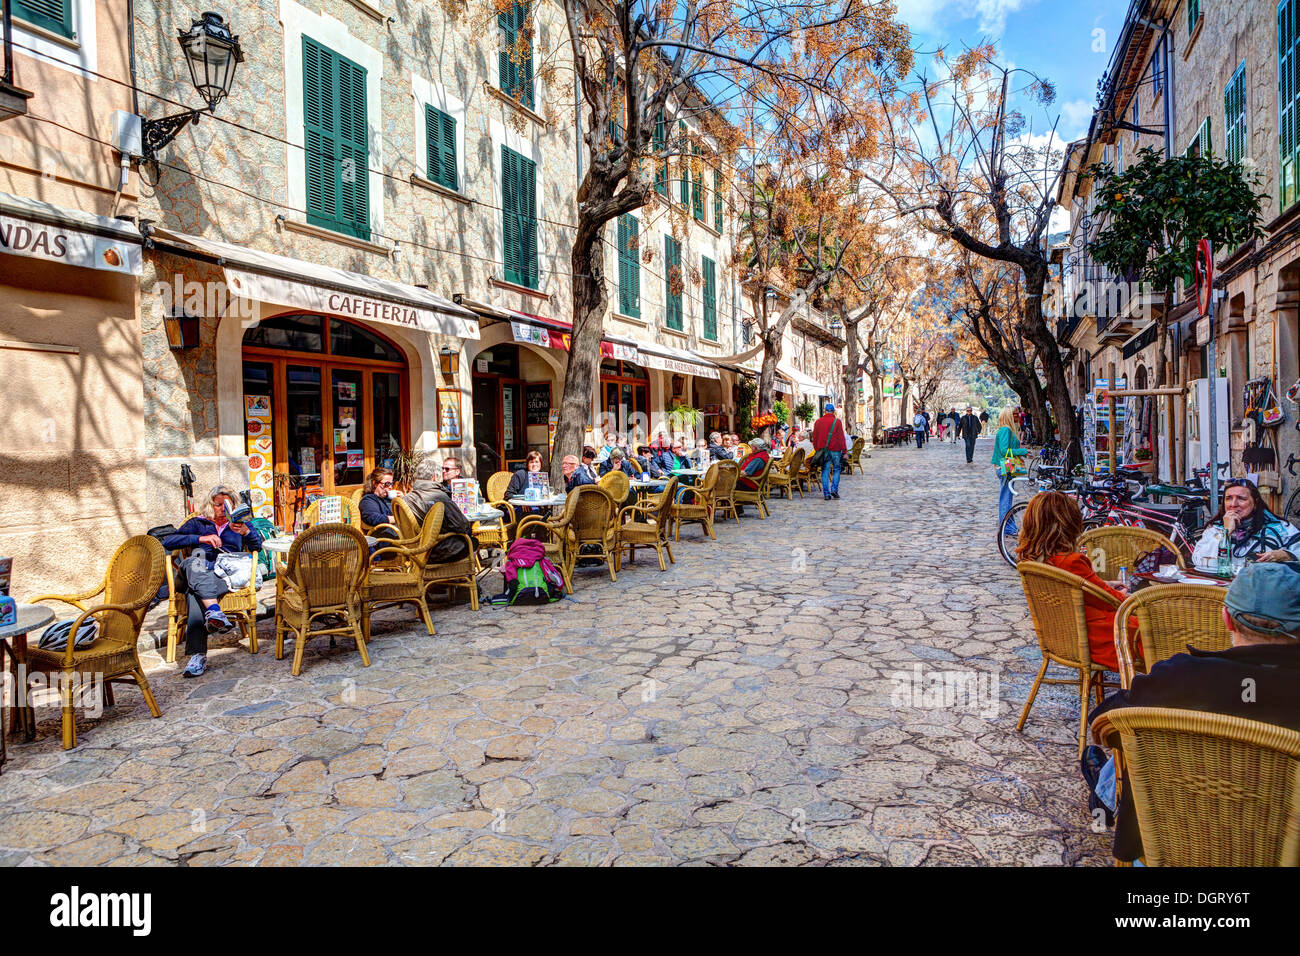 Des cafés en plein air dans une rue, centre historique, Valldemossa, Majorque, Îles Baléares, Espagne Banque D'Images